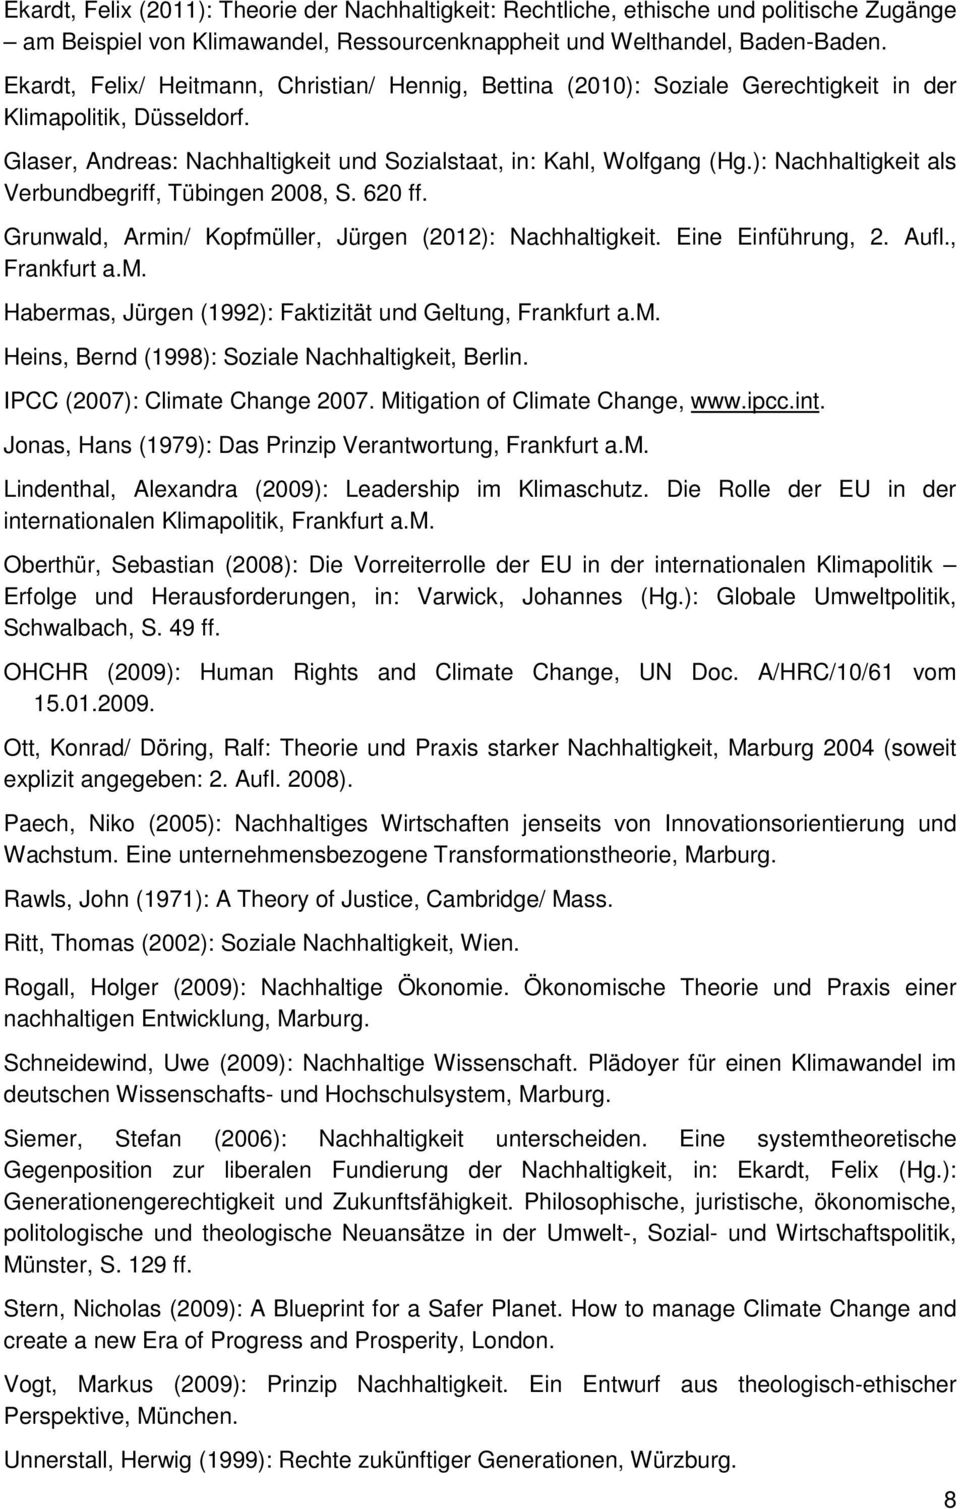 ): Nachhaltigkeit als Verbundbegriff, Tübingen 2008, S. 620 ff. Grunwald, Armin/ Kopfmüller, Jürgen (2012): Nachhaltigkeit. Eine Einführung, 2. Aufl., Frankfurt a.m. Habermas, Jürgen (1992): Faktizität und Geltung, Frankfurt a.